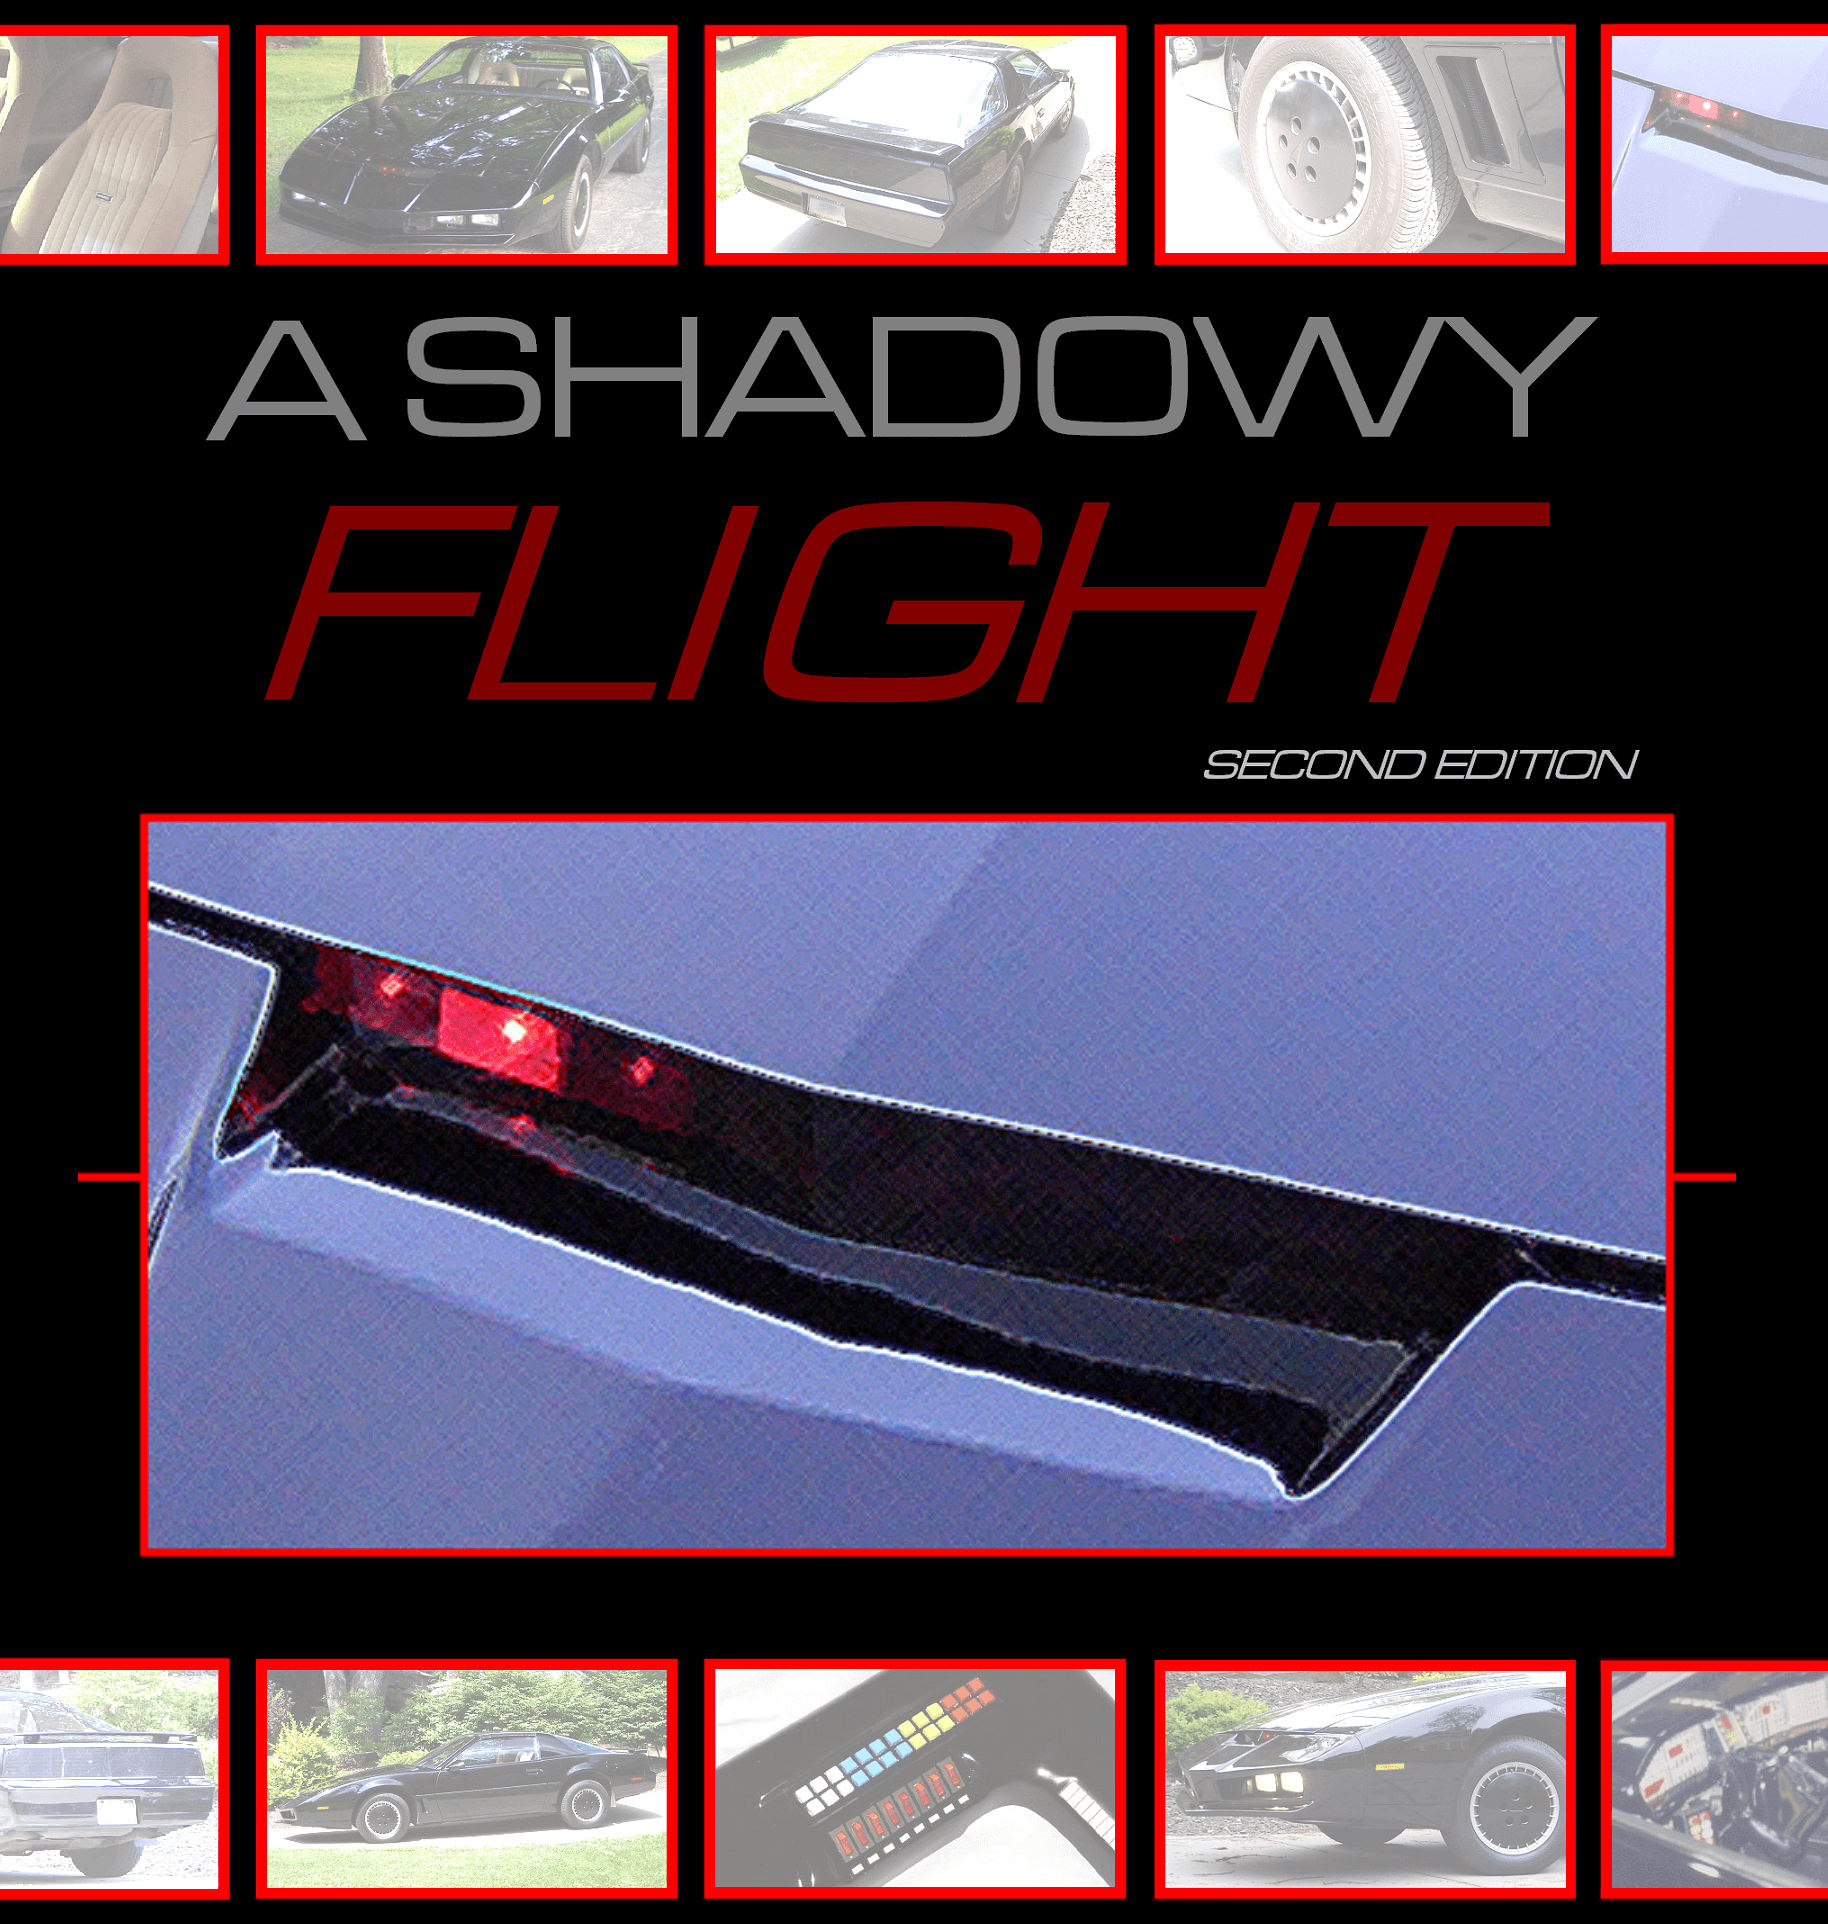 Knight Rider A Shadowy Flight